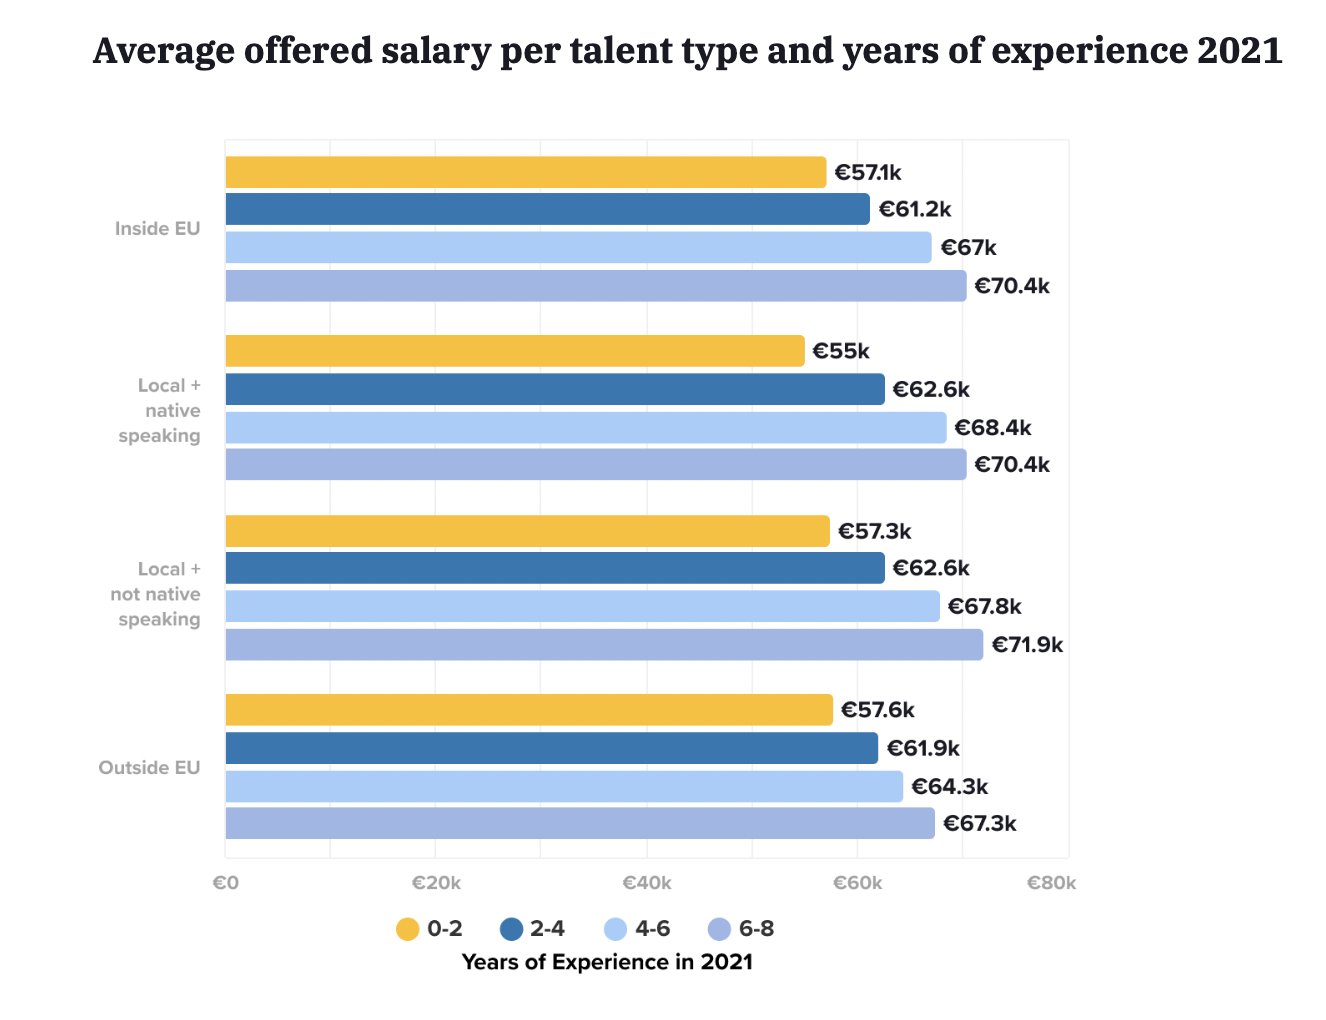     Salario medio ofrecido por tipo de talento y años de experiencia en Alemania en 2021 